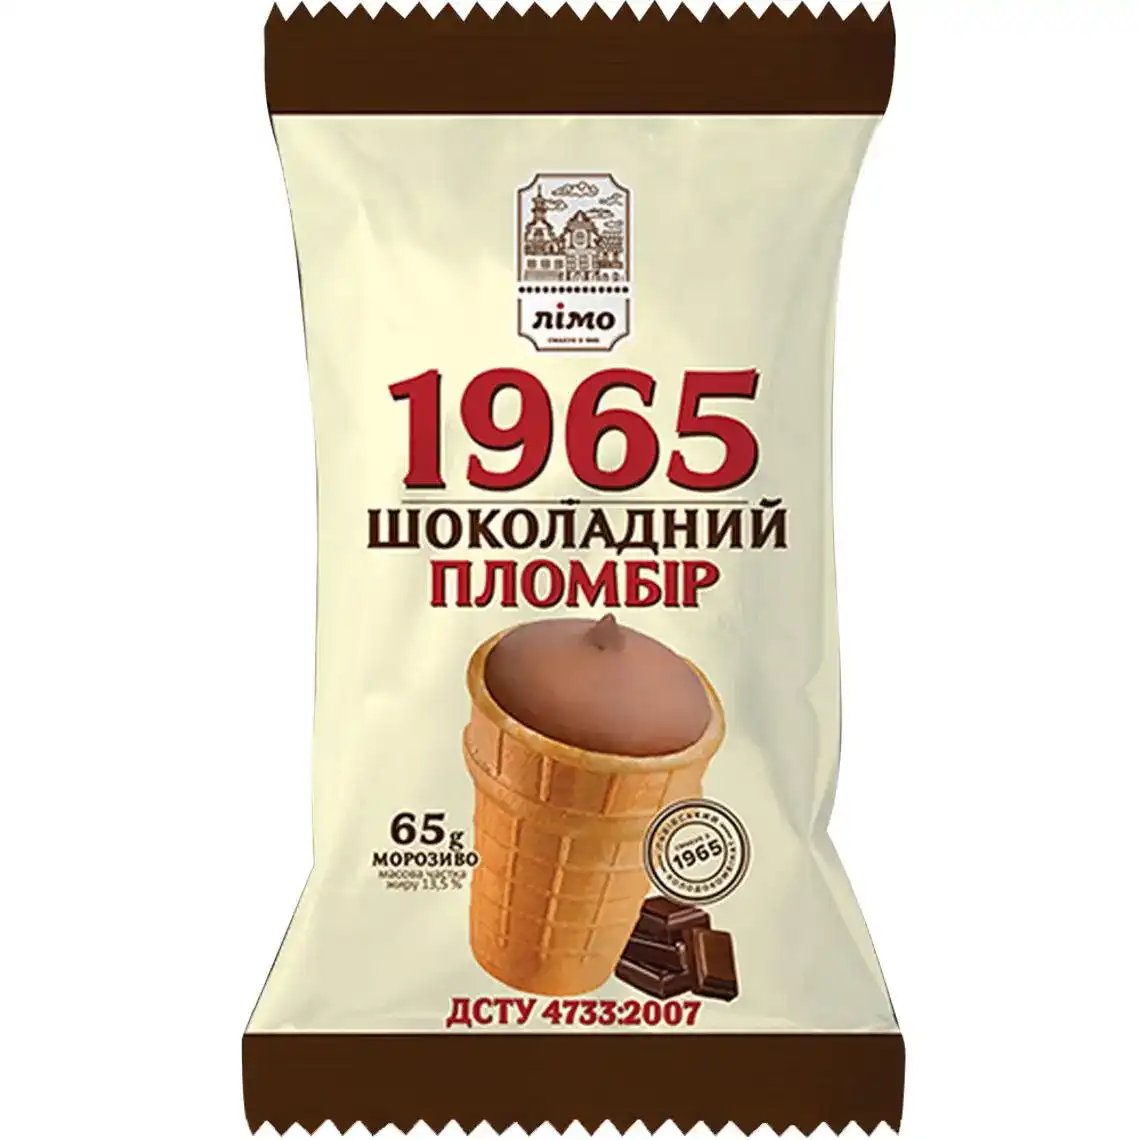 Морозиво Лімо 1965 шоколадний пломбір 65 г